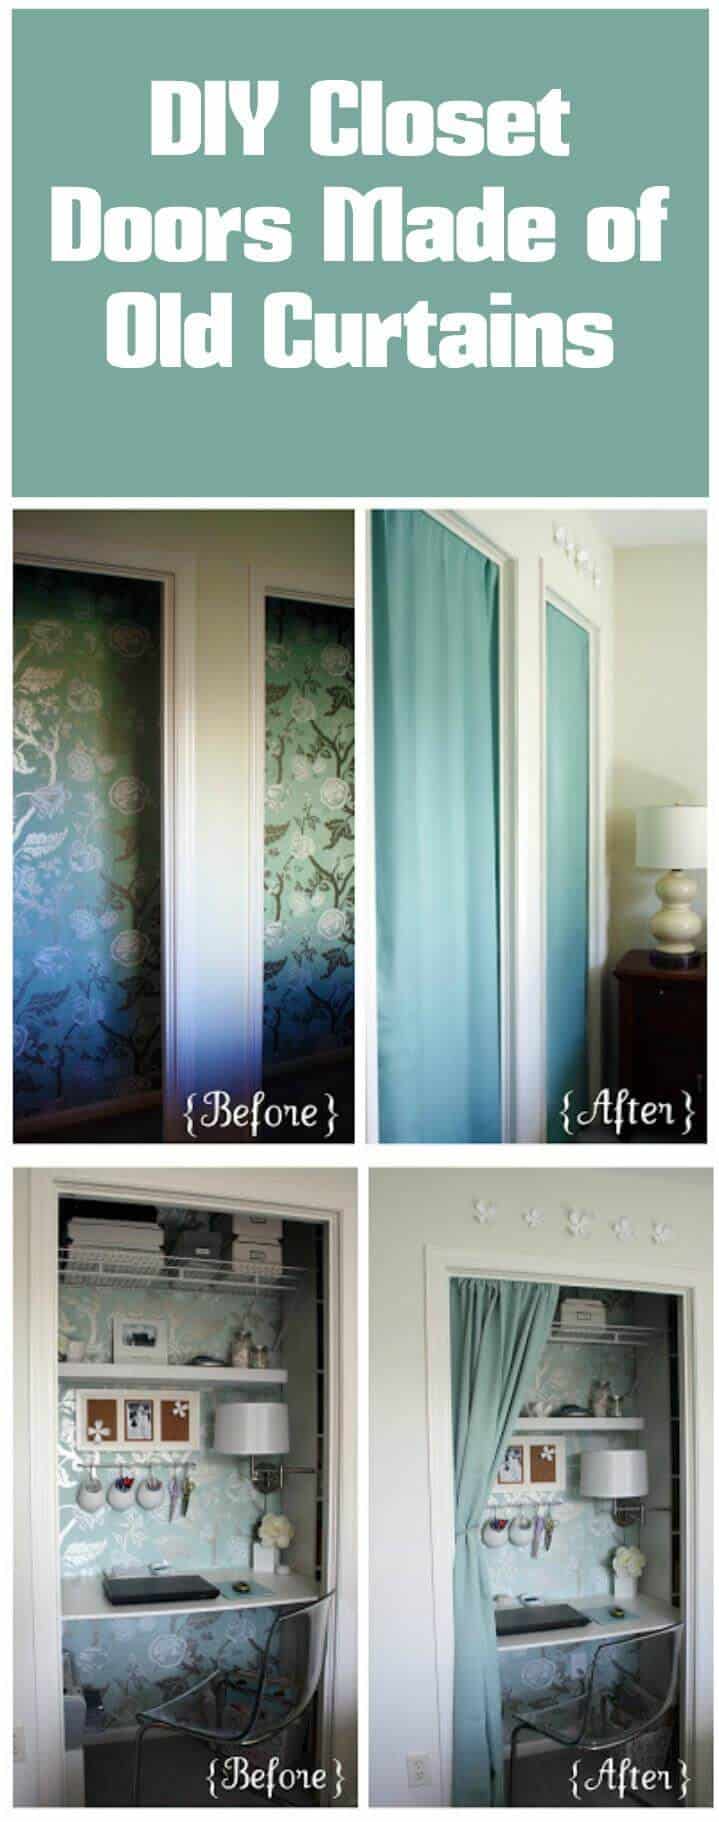 puertas de armario instantáneas hechas de cortinas viejas